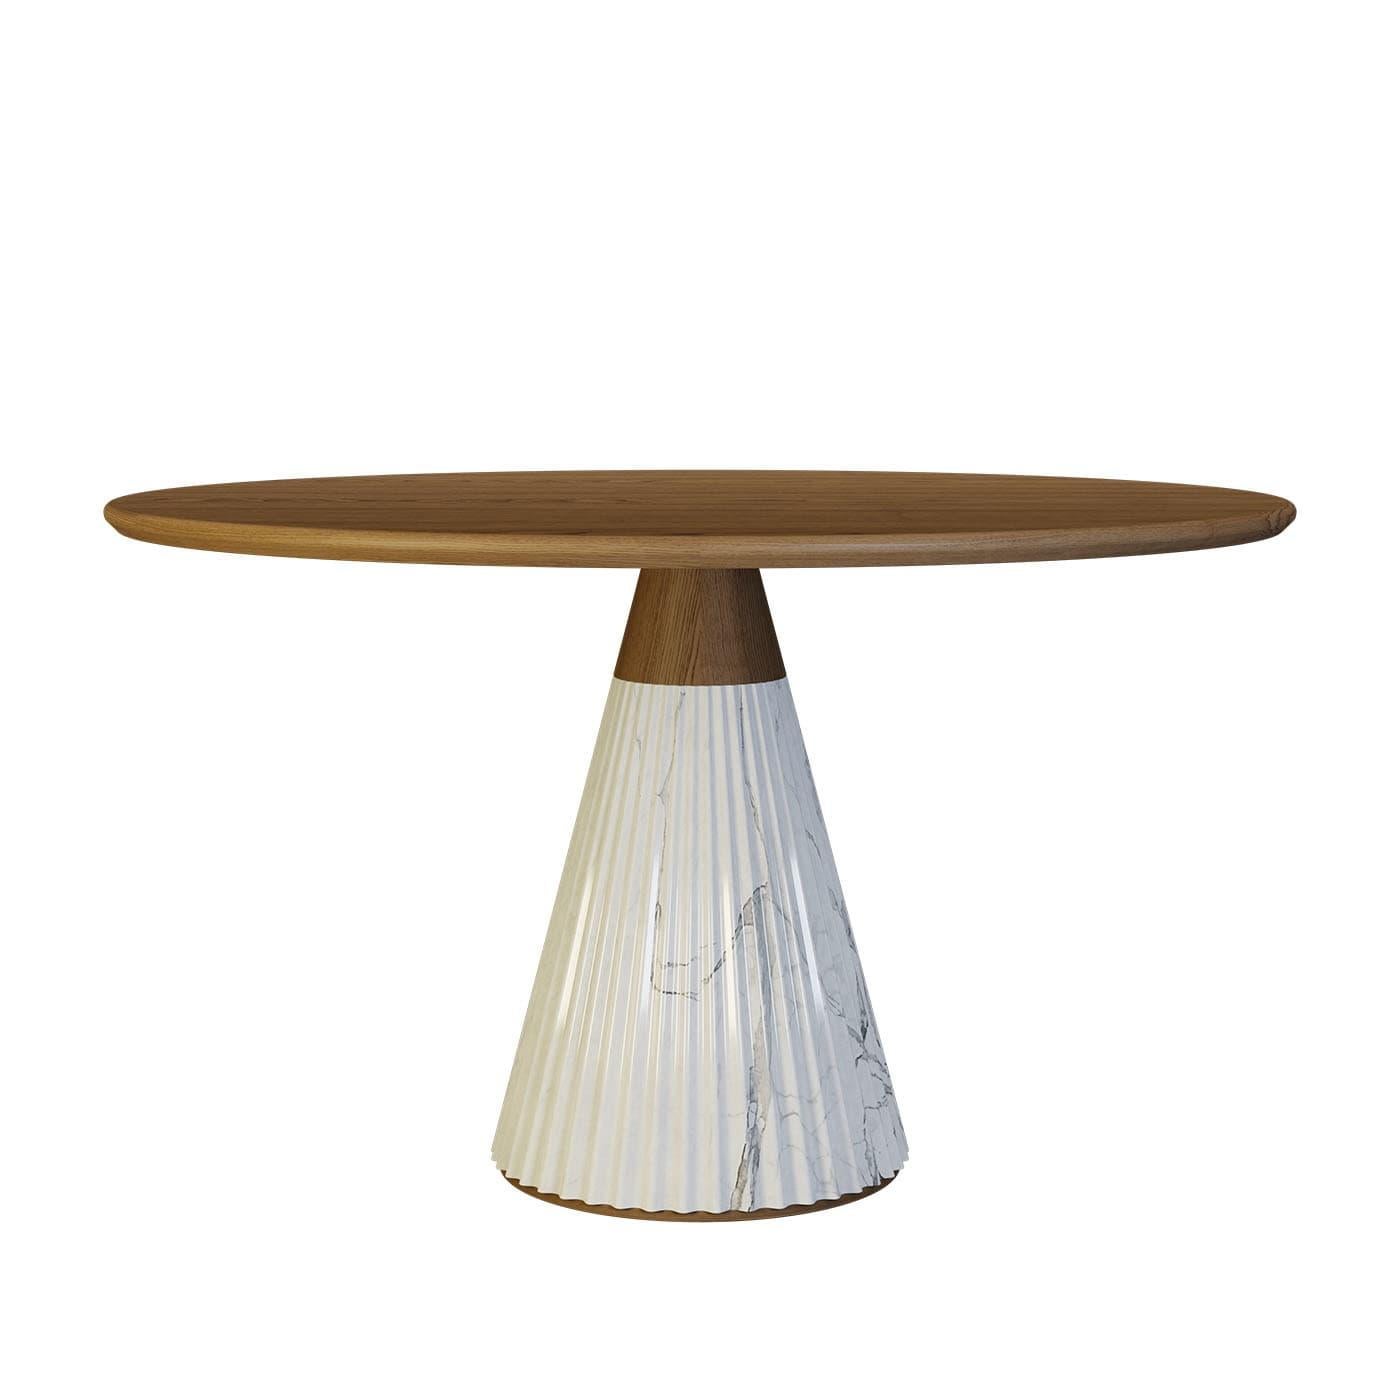 Dieser runde Tisch von Libero Rutilo ist eine Ikone der zeitgenössischen Raffinesse und setzt einen raffinierten und eleganten Akzent in einem modernen Wohn- oder Essbereich. Die runde Tischplatte aus Eschenholz ist handgefertigt und ruht auf einem